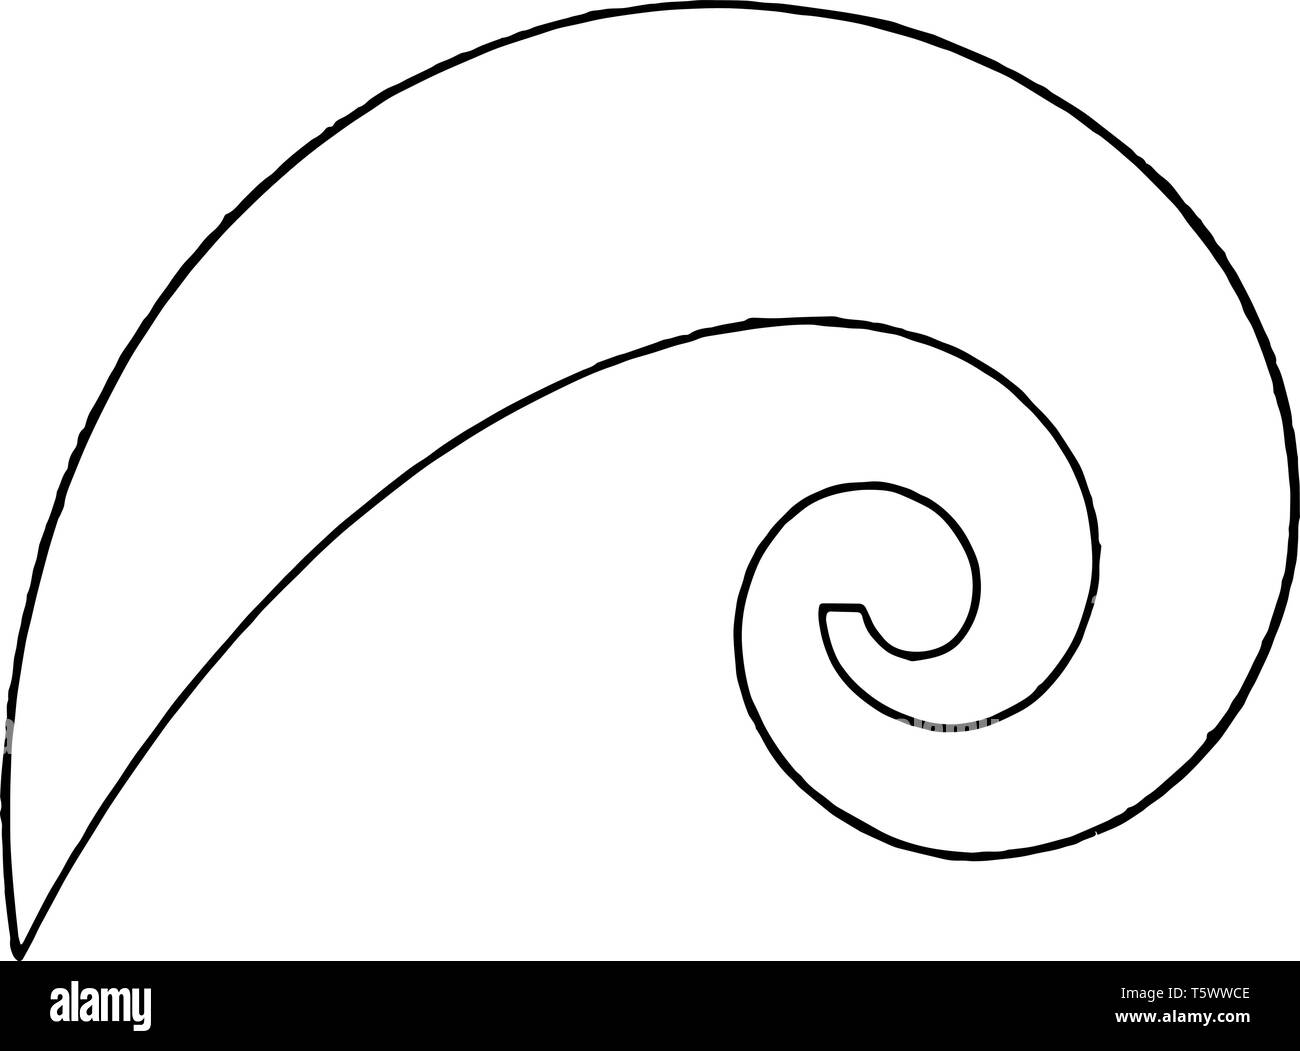 Logarithmische Spirale Französische Kurven ist etwa eng gestaltet eine zykloide wird verwendet, um kurze elliptischen Kurven durch Radius mit Punkten vin zu zeichnen Stock Vektor